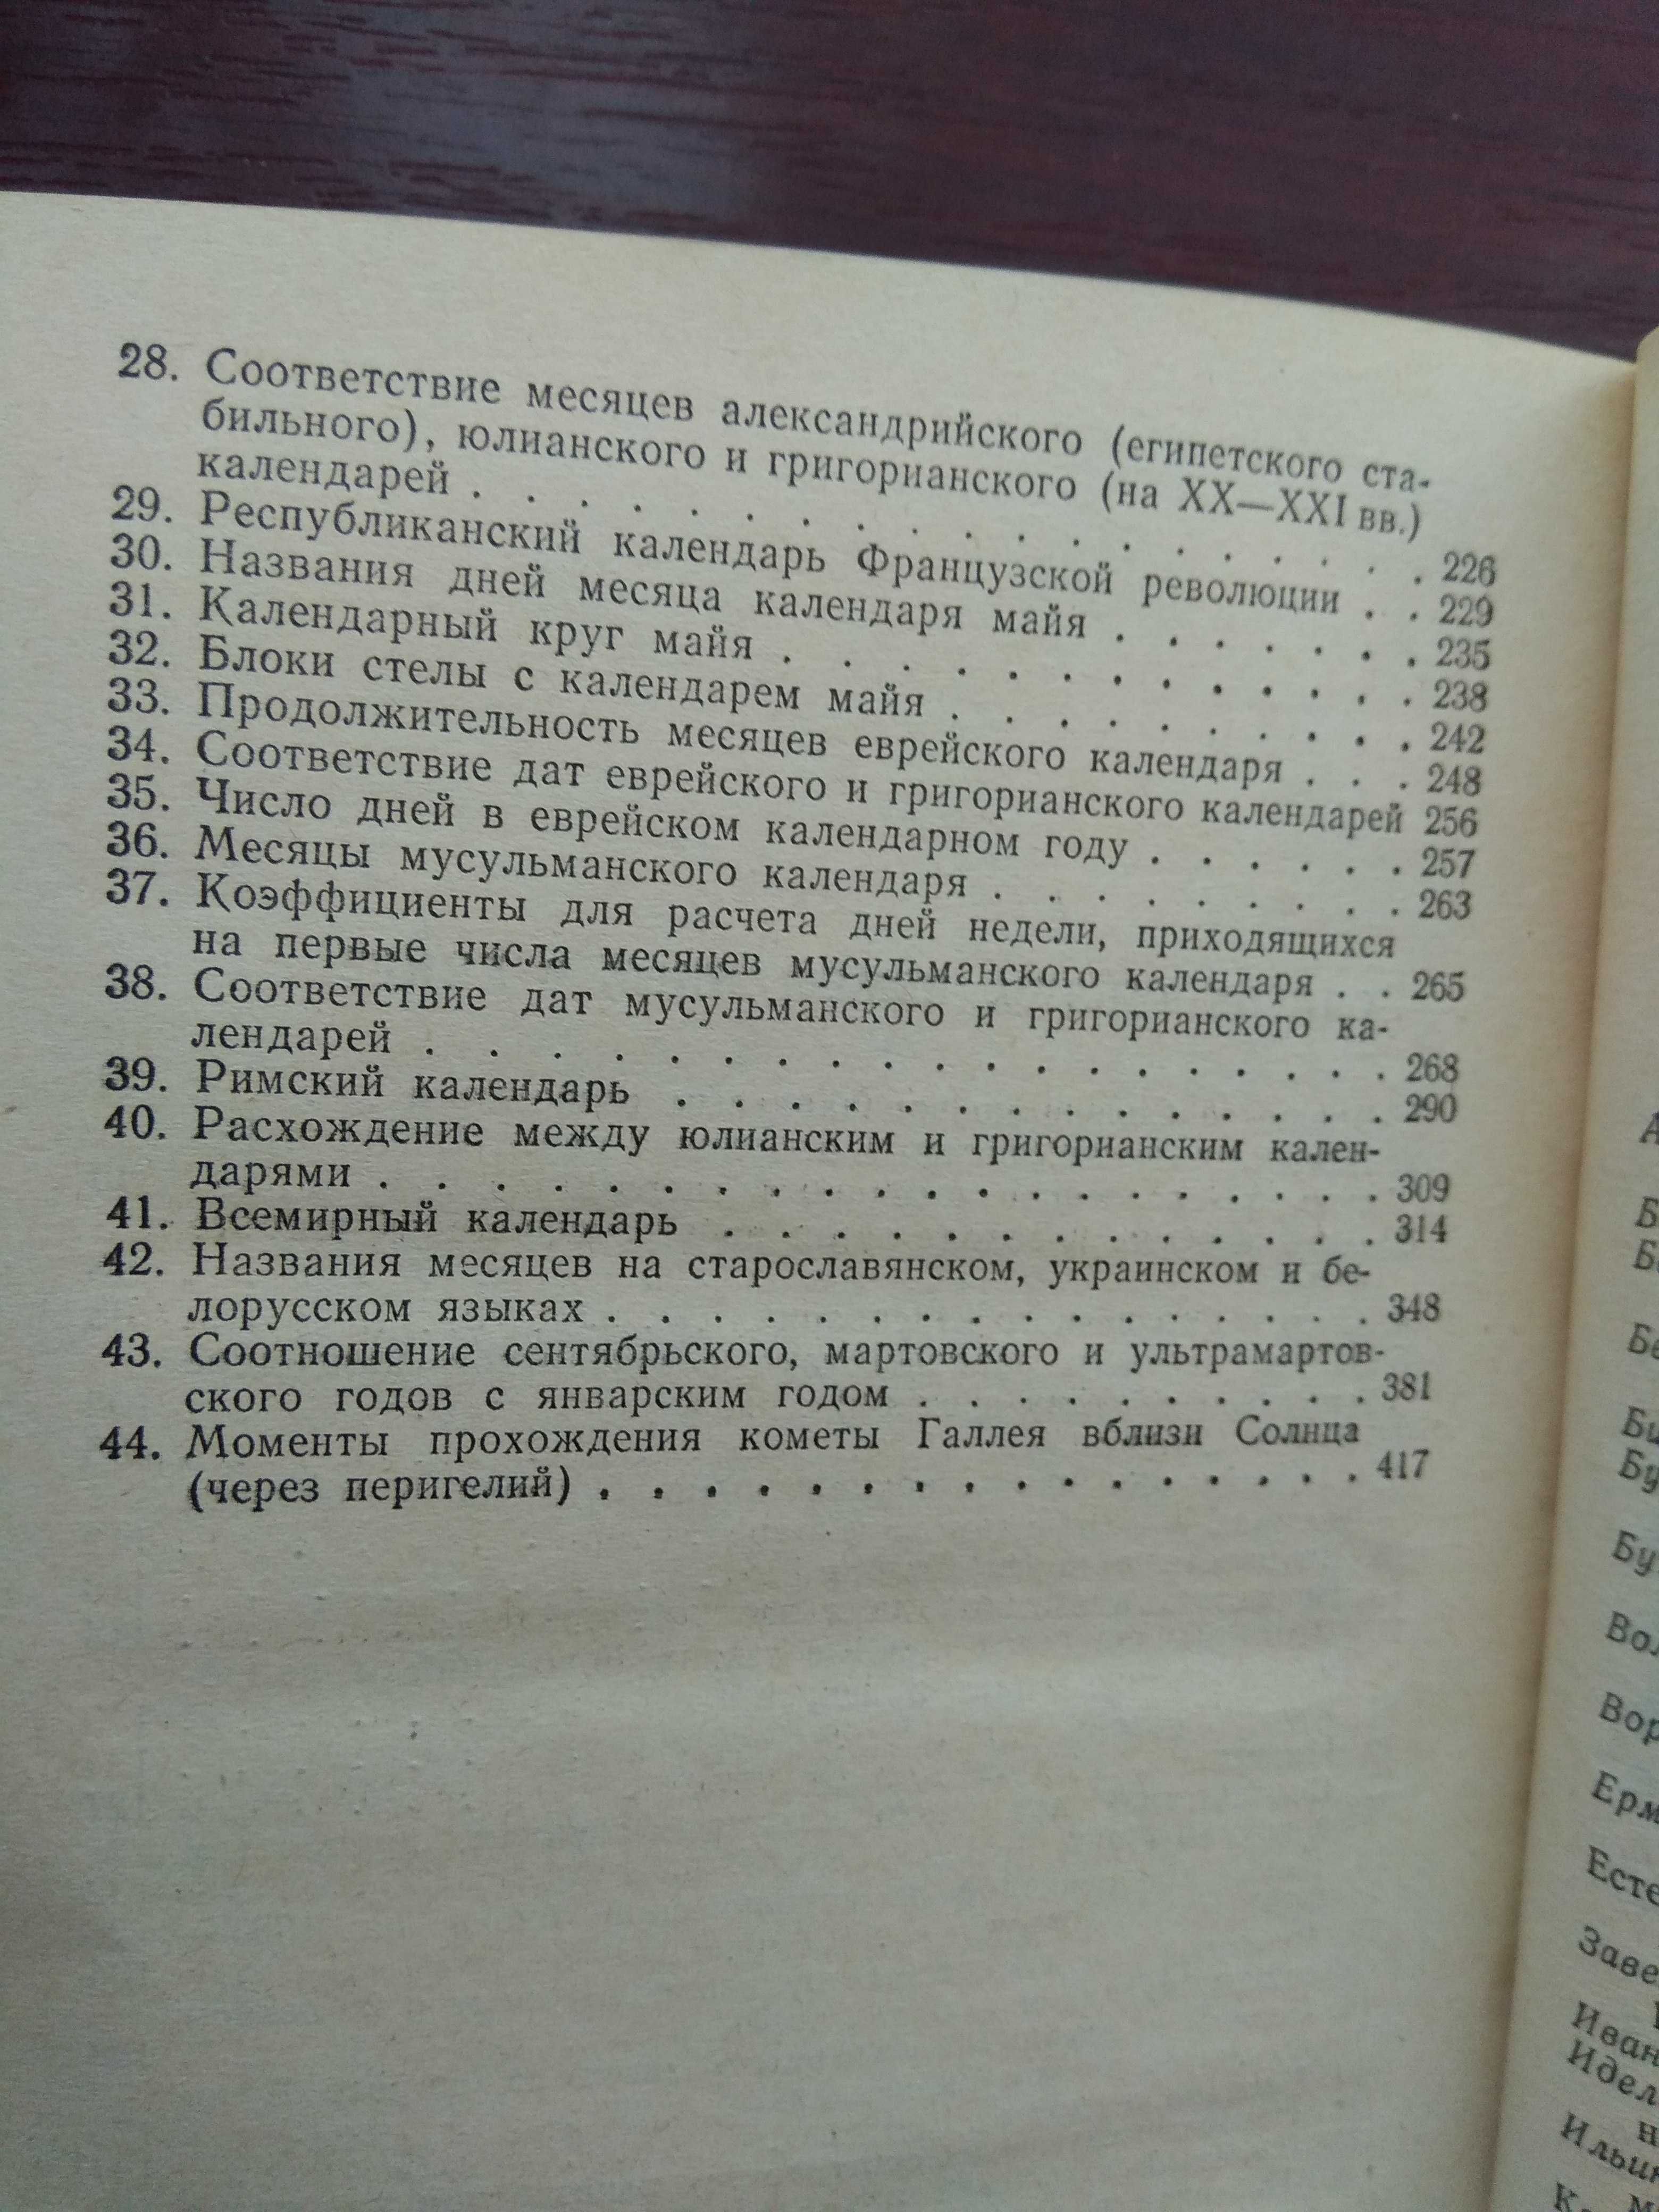 И.А.Климишин "Календарь и хронология"